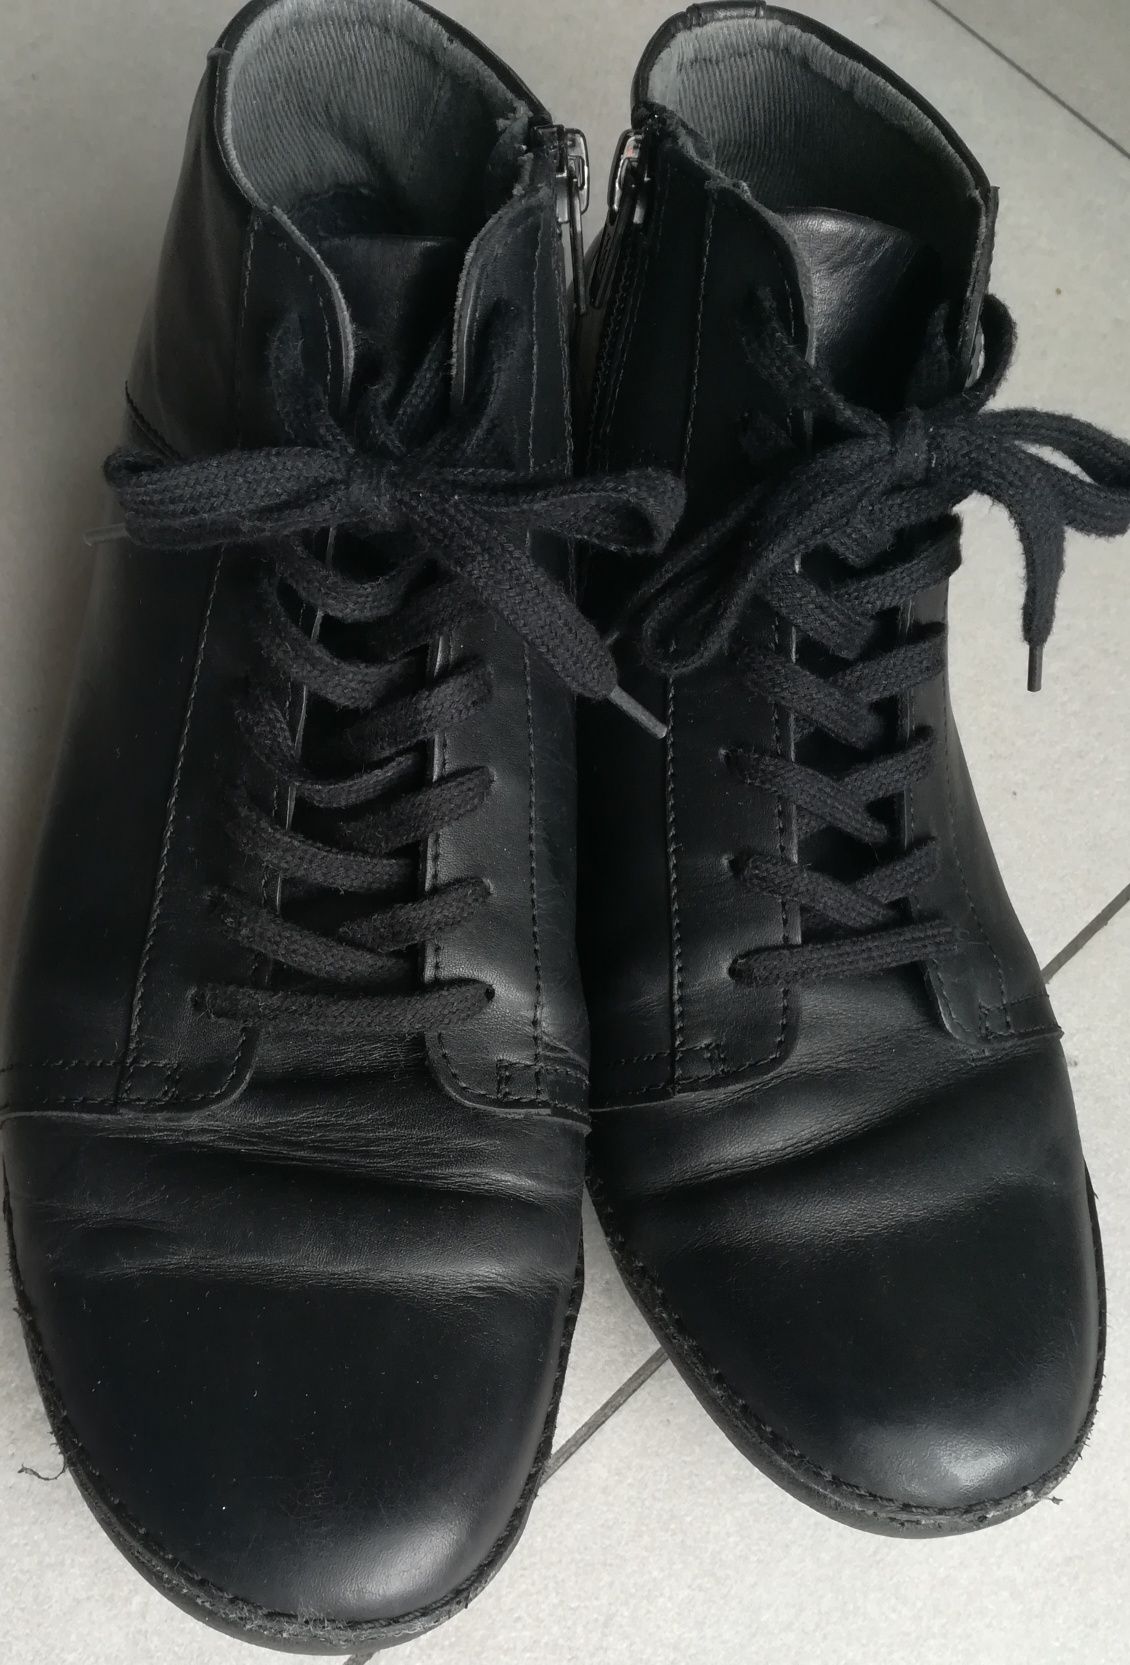 Buty, botki, sneakersy skórzane Kickers, rozm. 40(26,2 cm), czarne